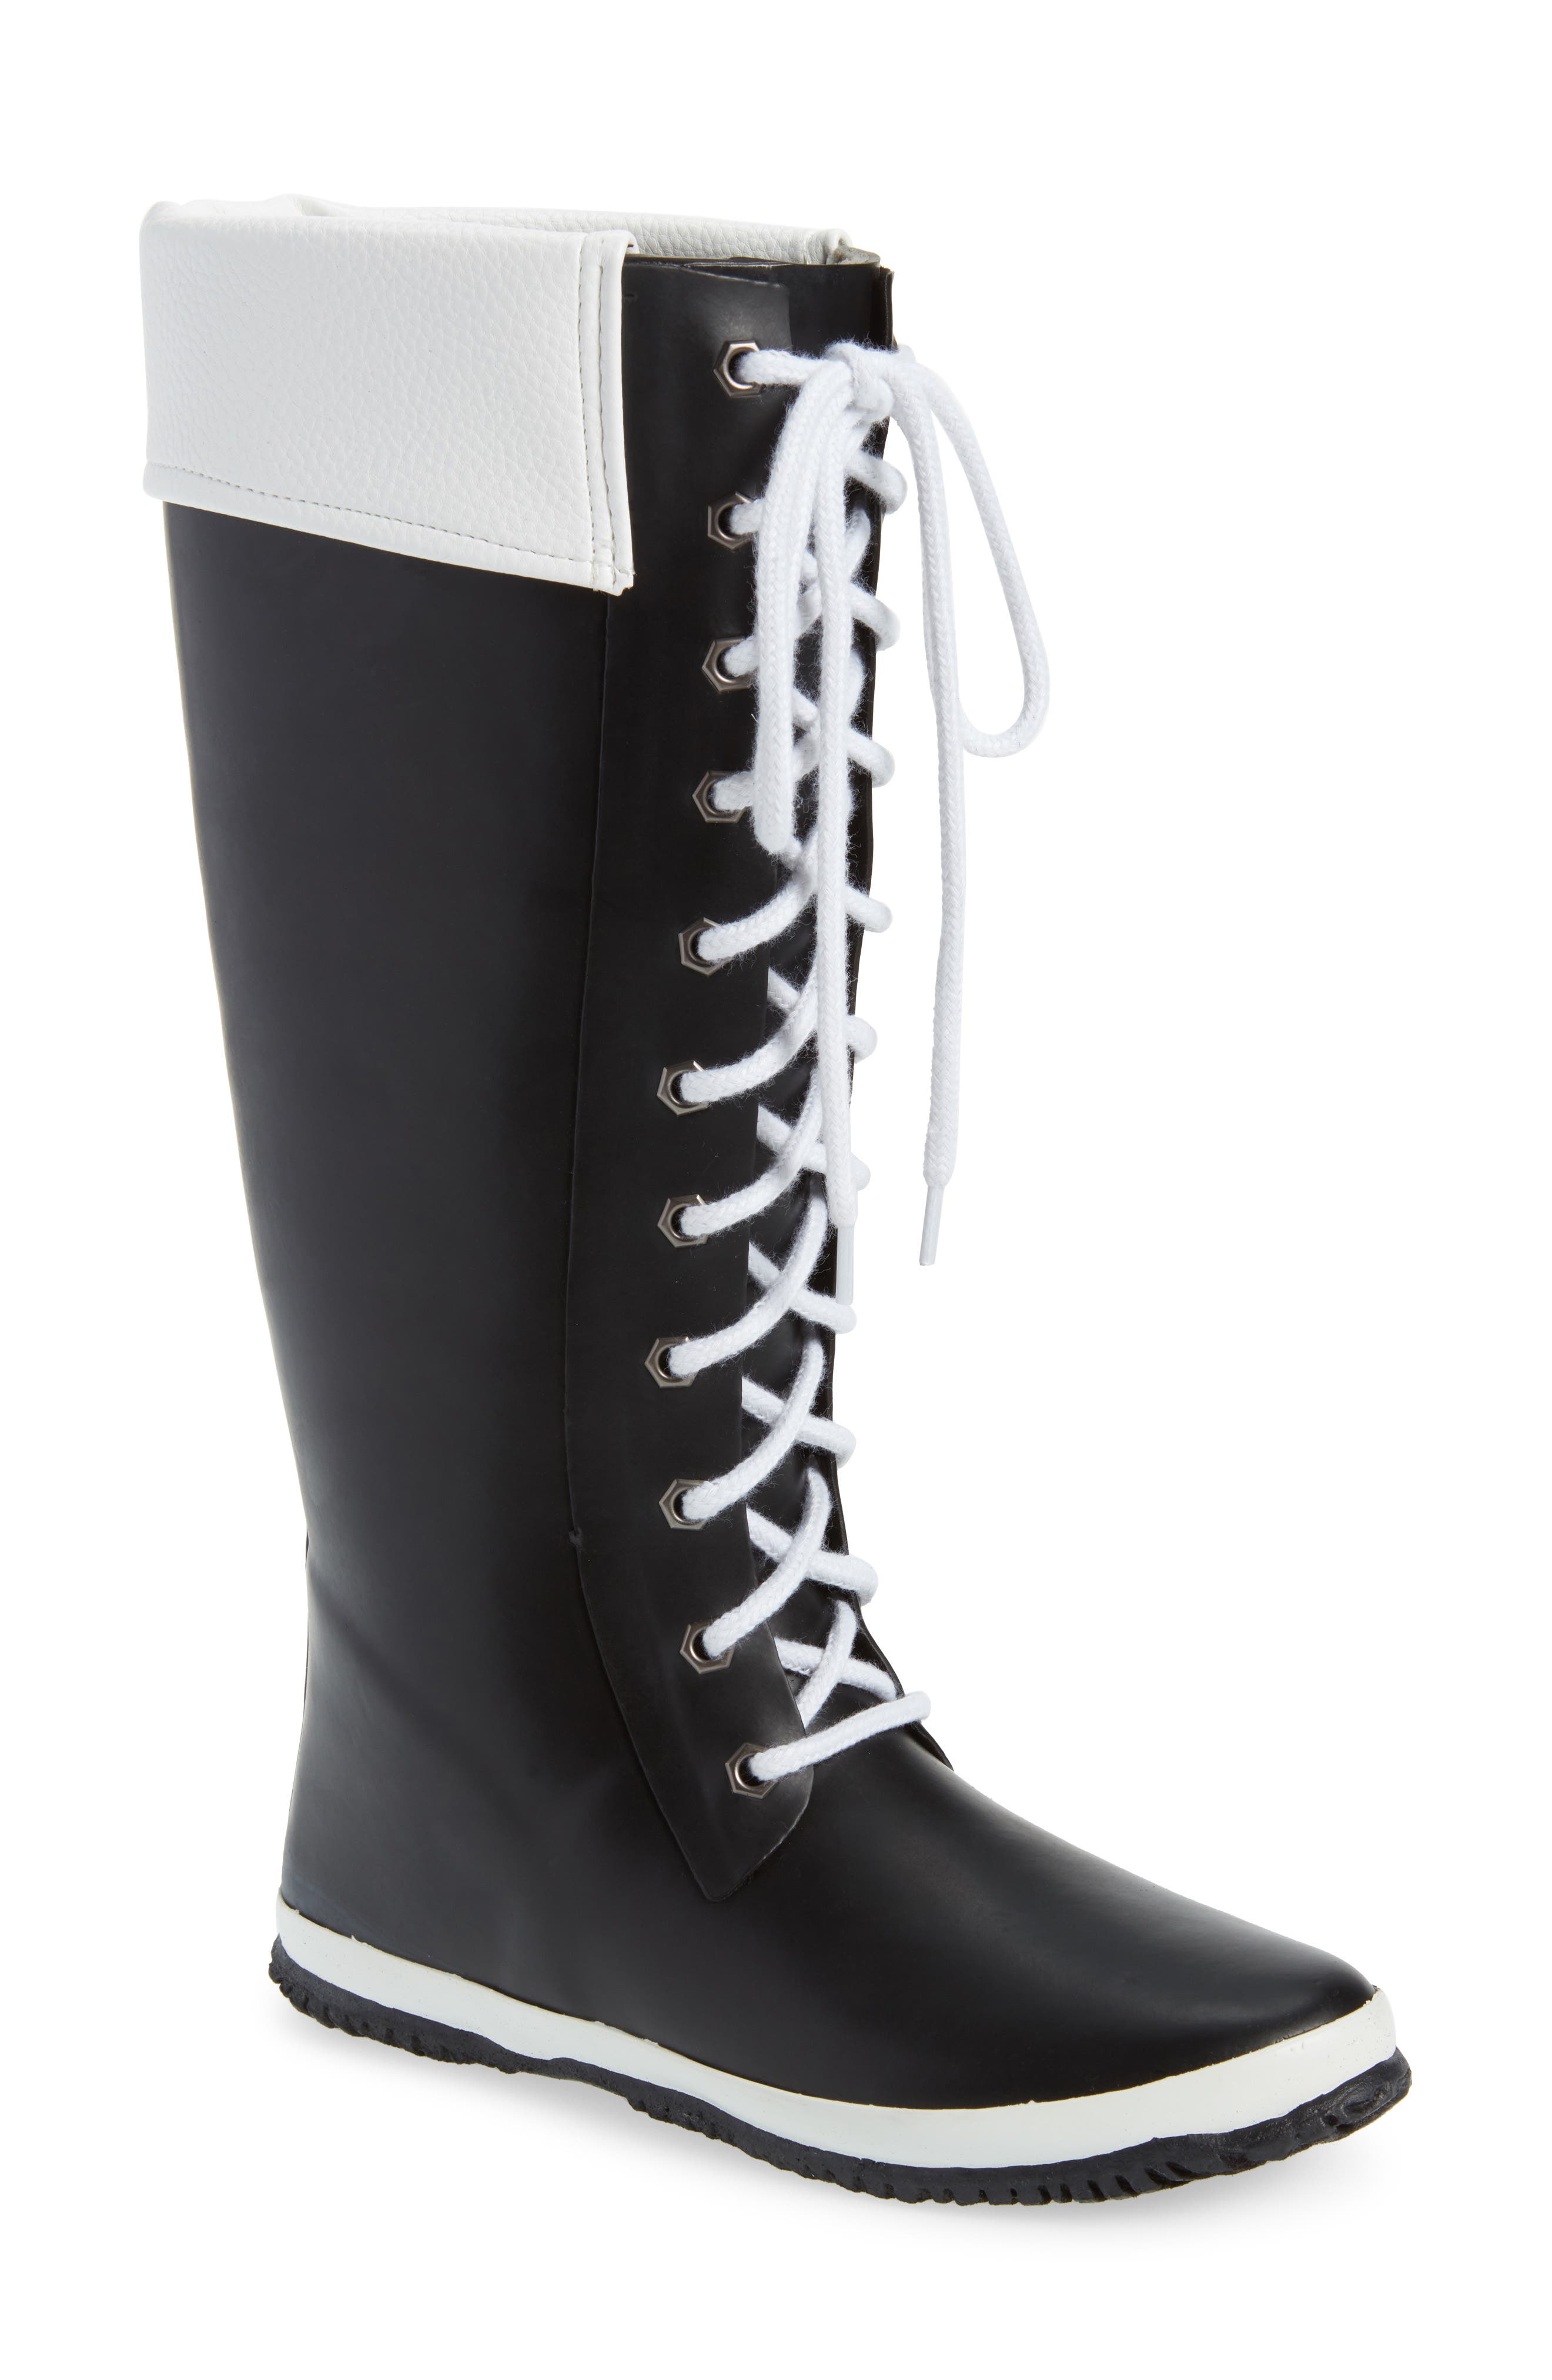 women's rain boots nordstrom rack